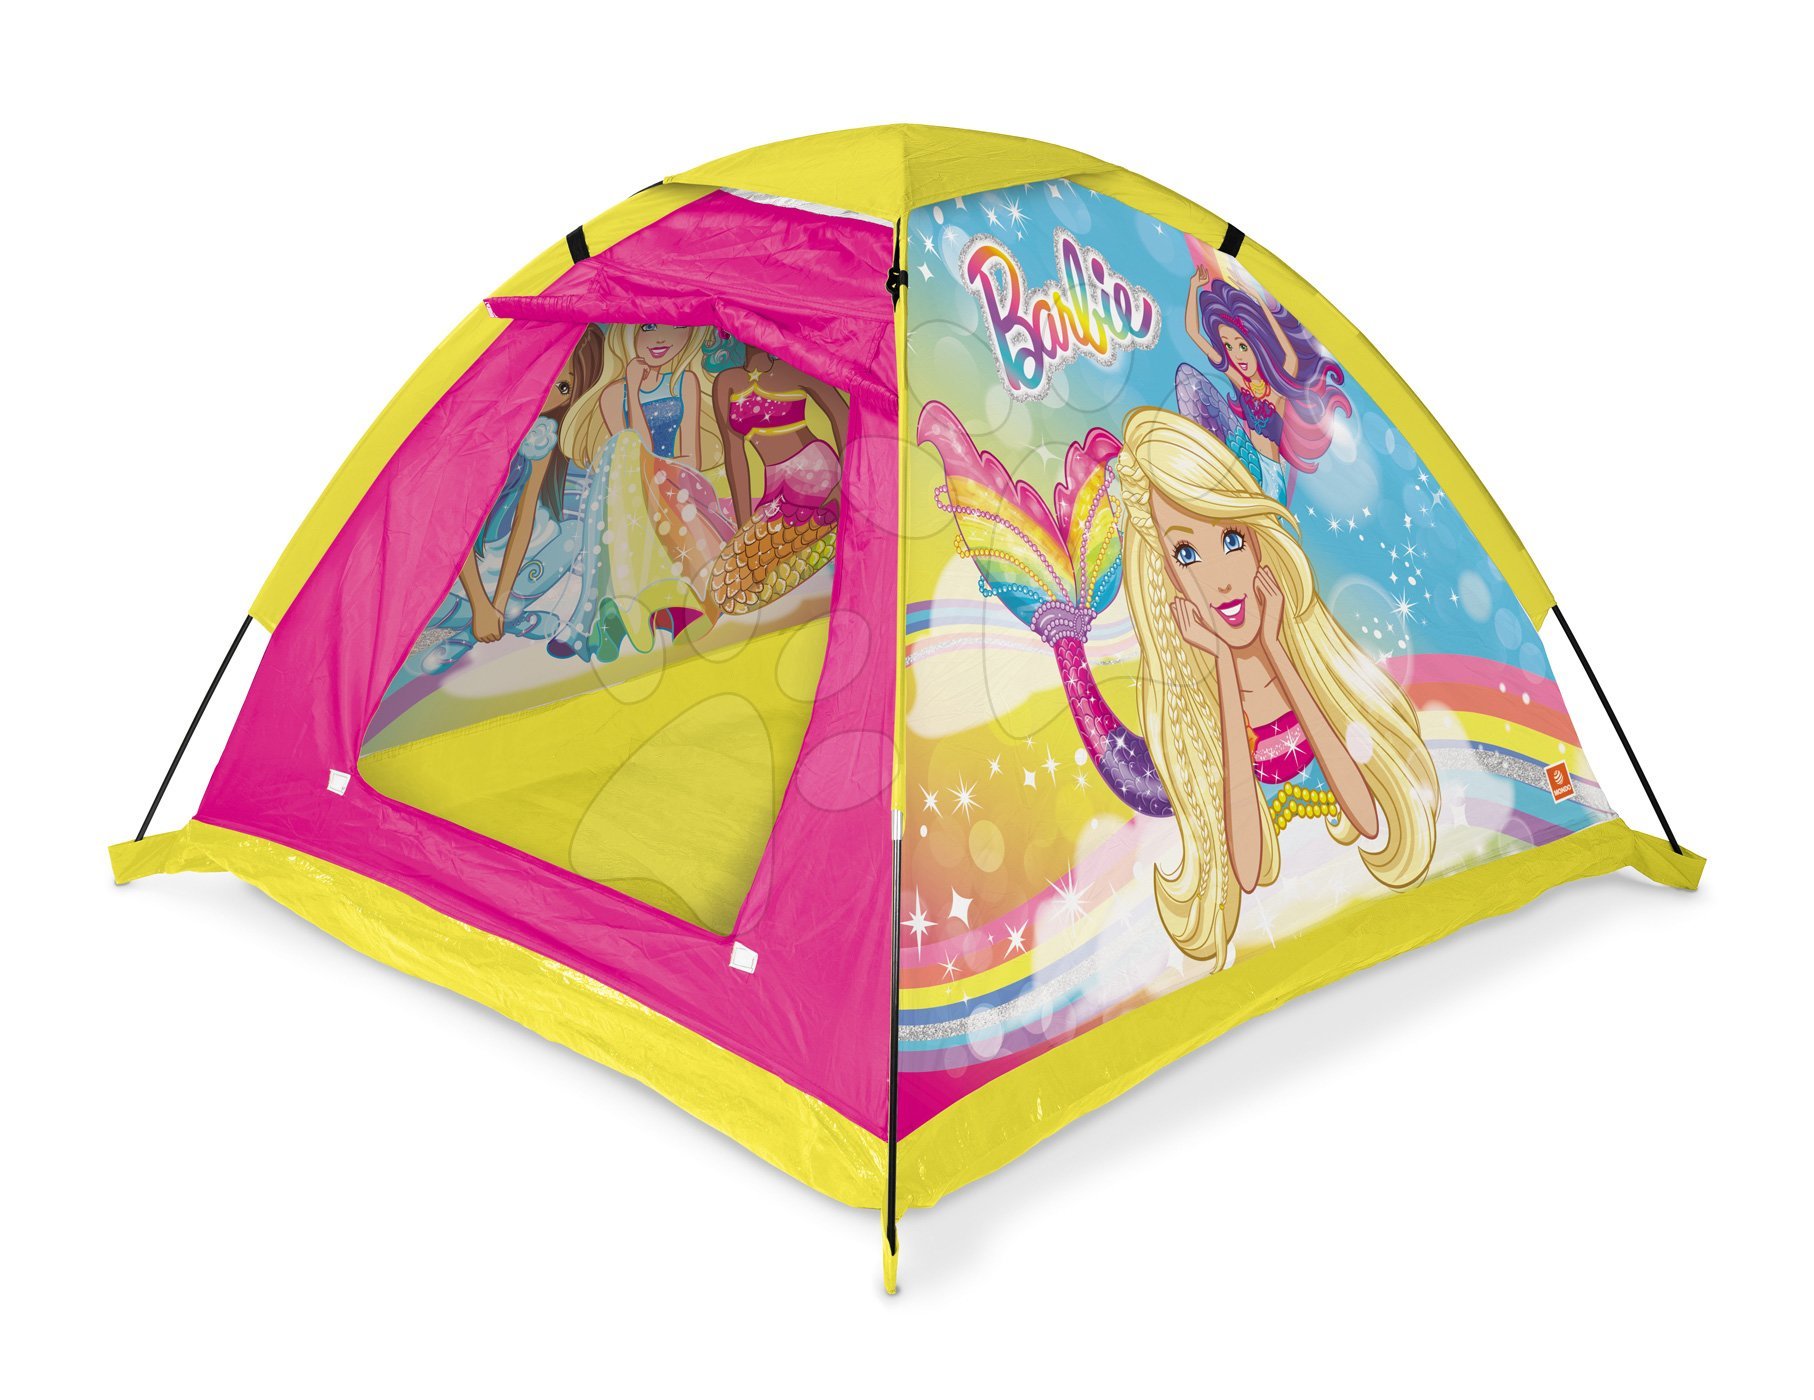 Mondo sátor gyerekeknek Barbie Garden táskában rózsaszín 28517